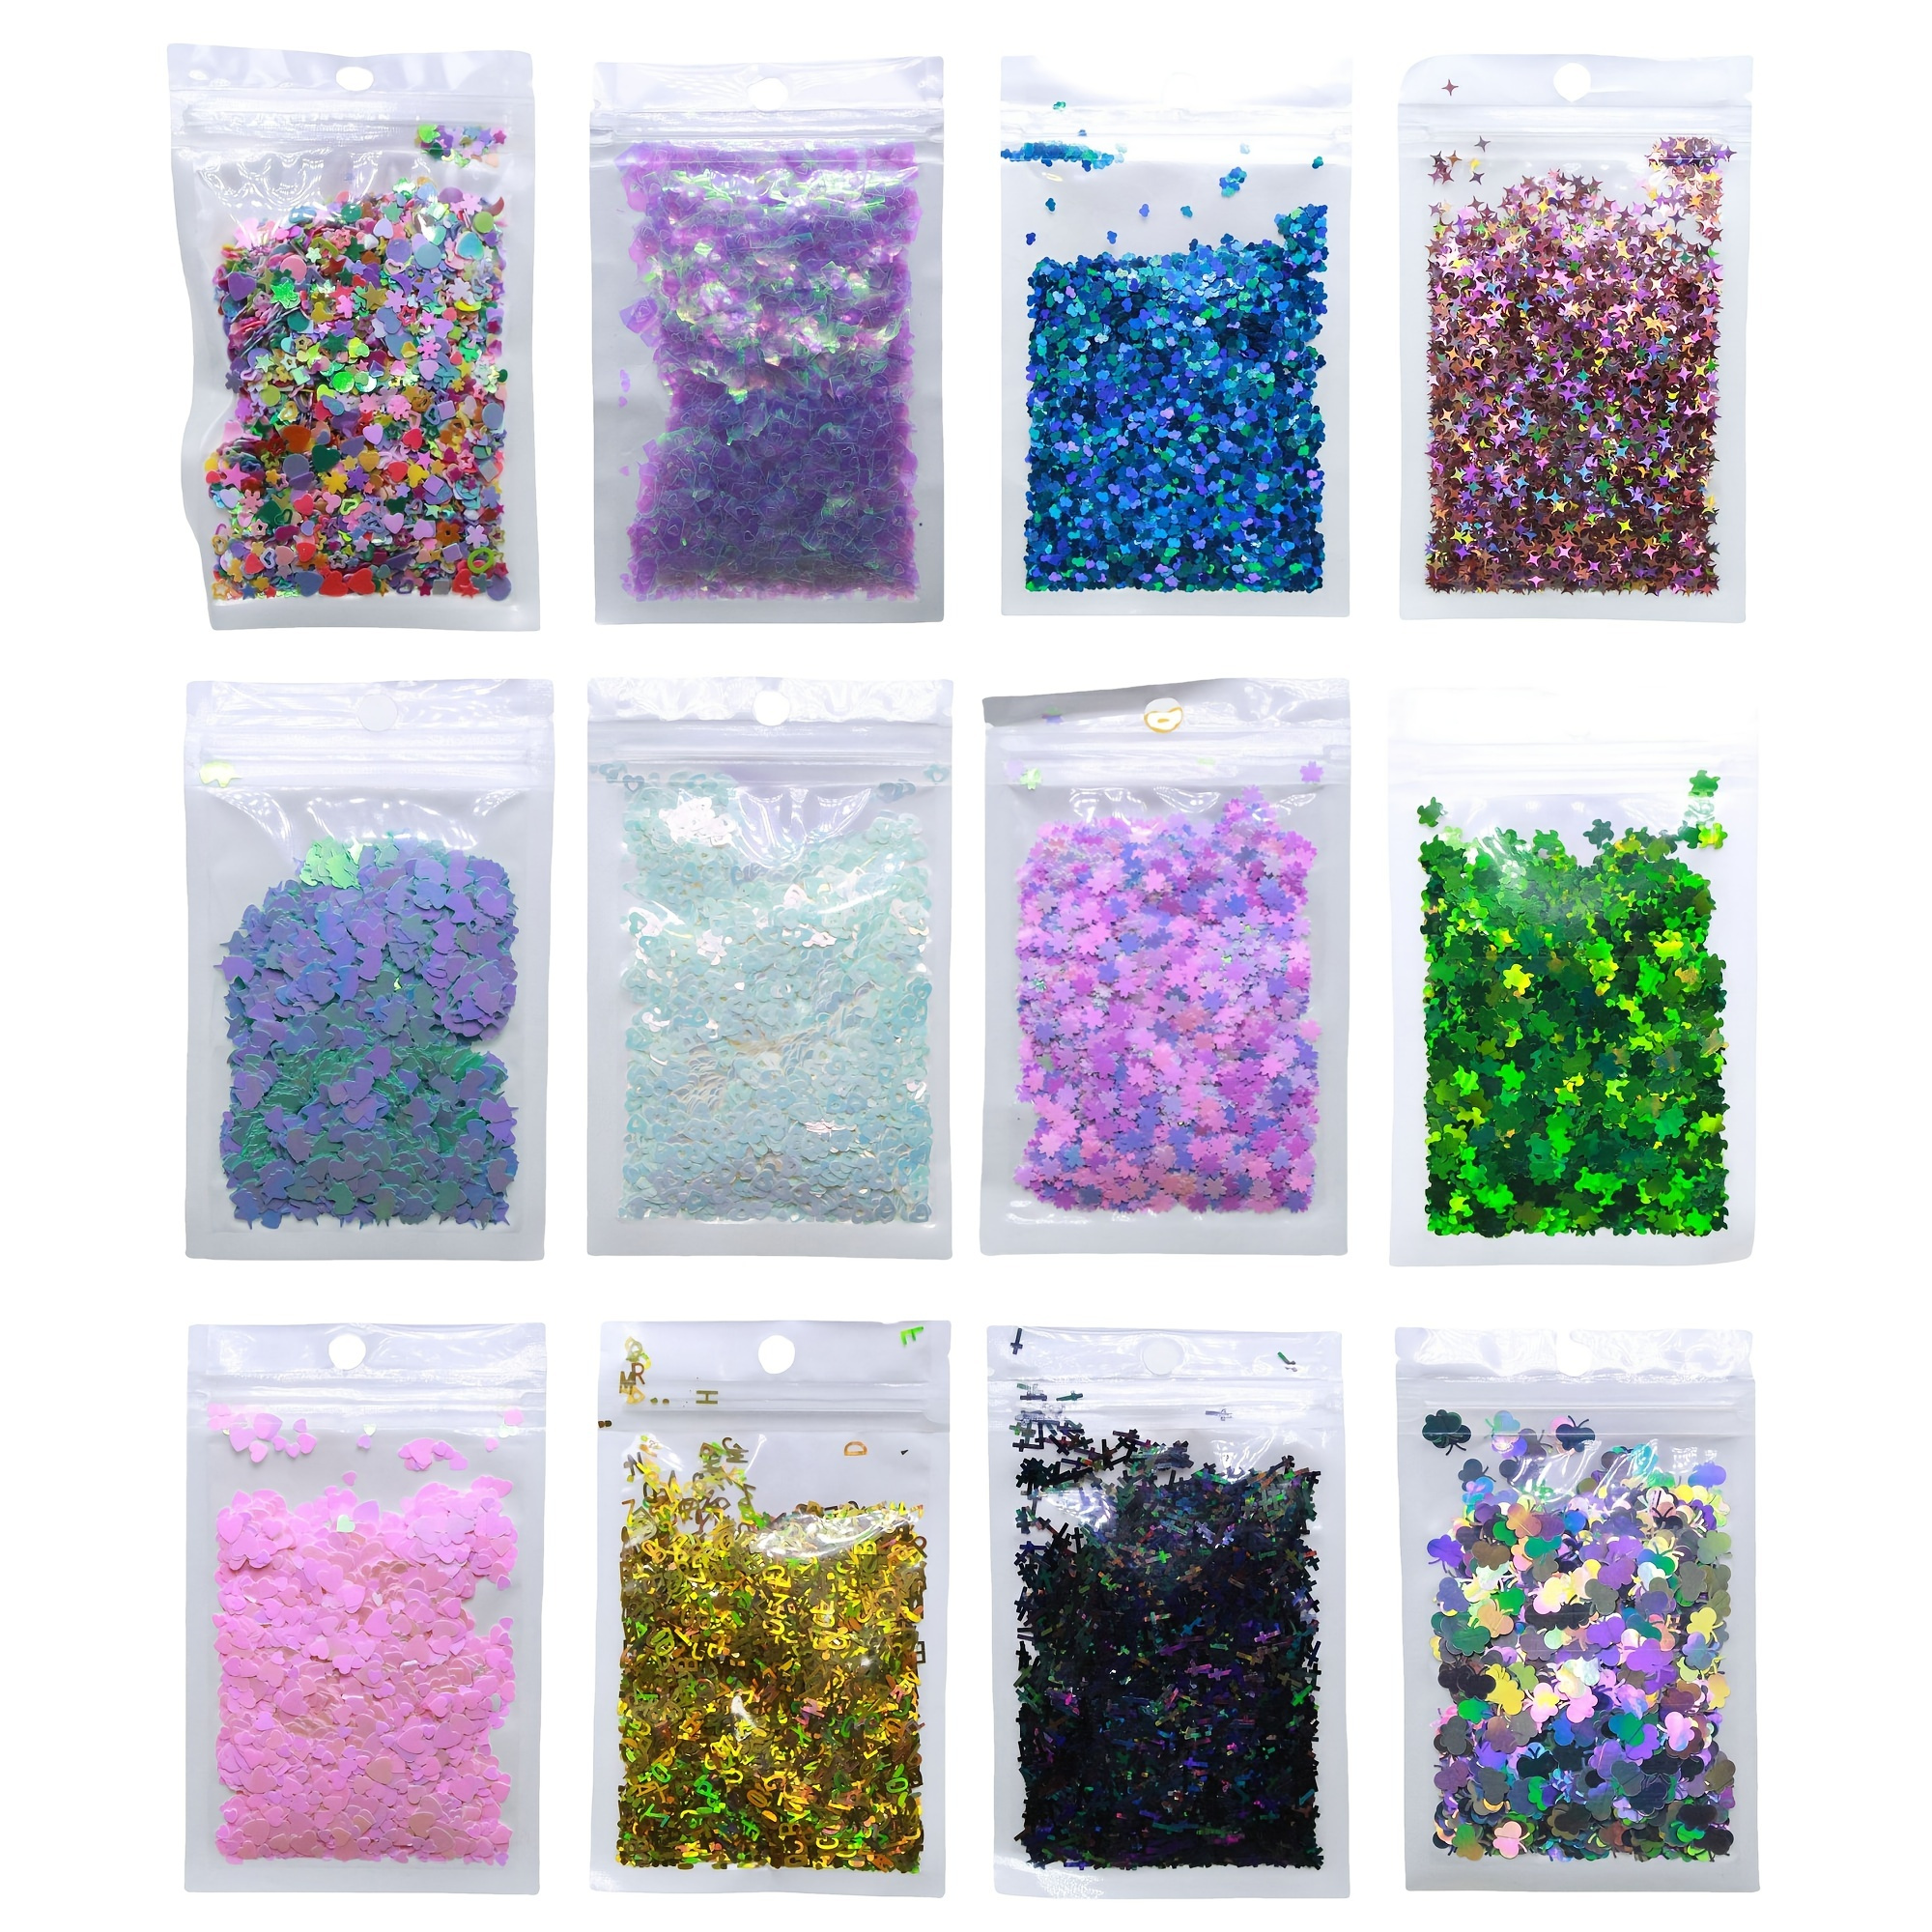 Mystery Glitter Bag Casuale 5 Sacchetti Glitters 10g Per Sacchetto